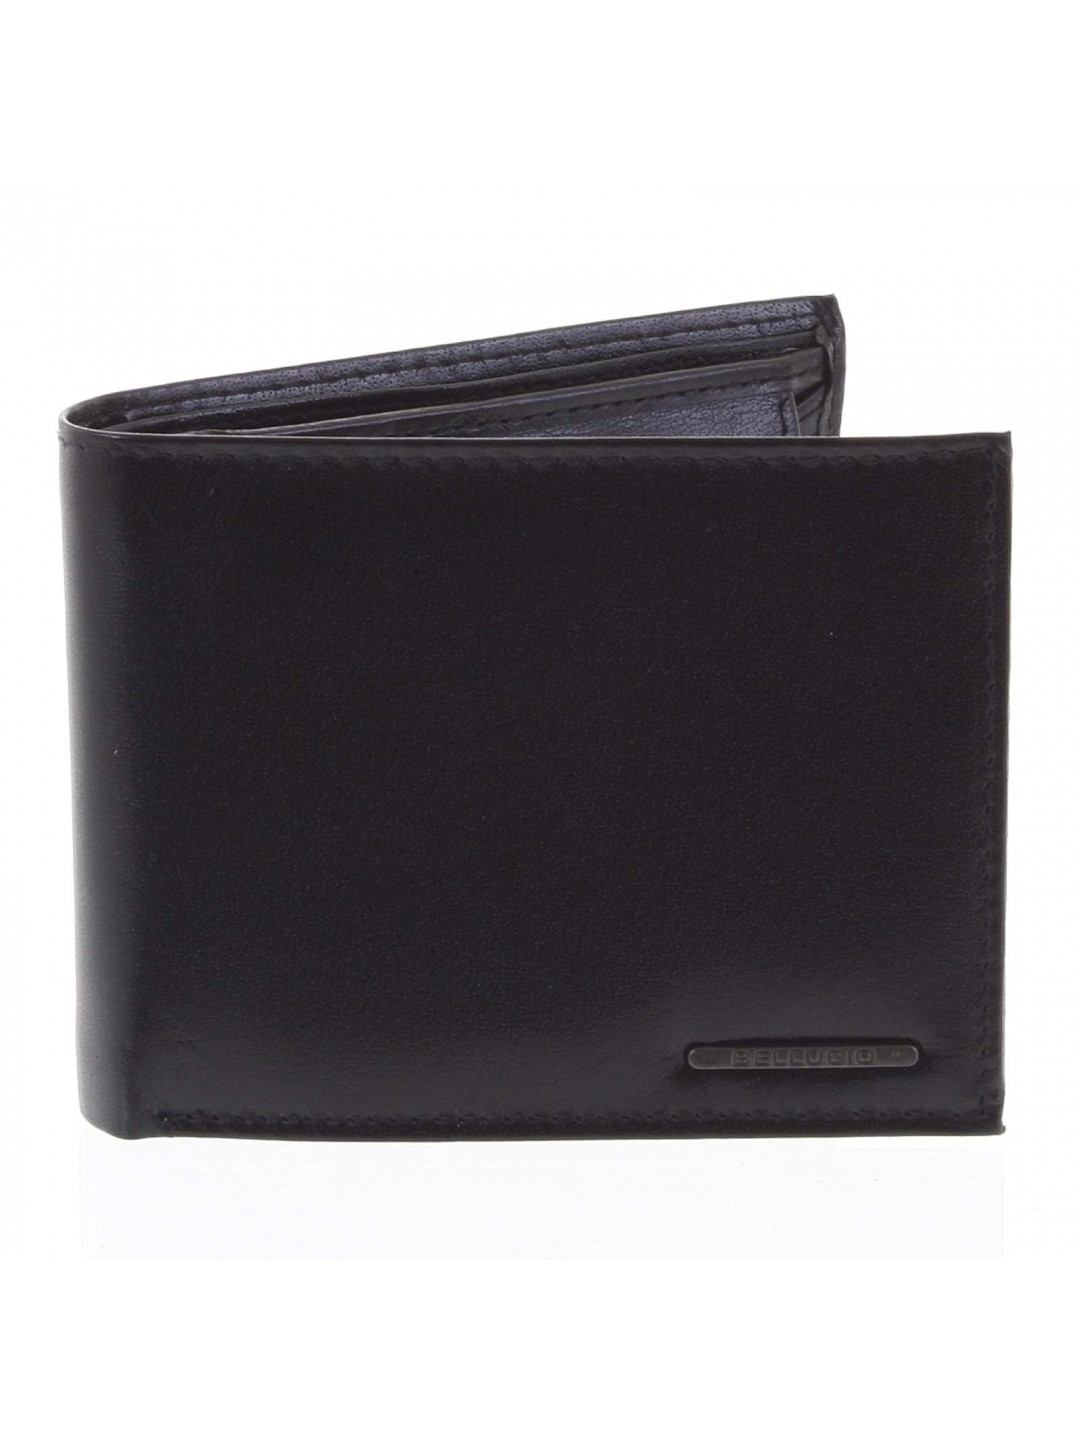 Pánská kožená peněženka černá – Bellugio Etien New